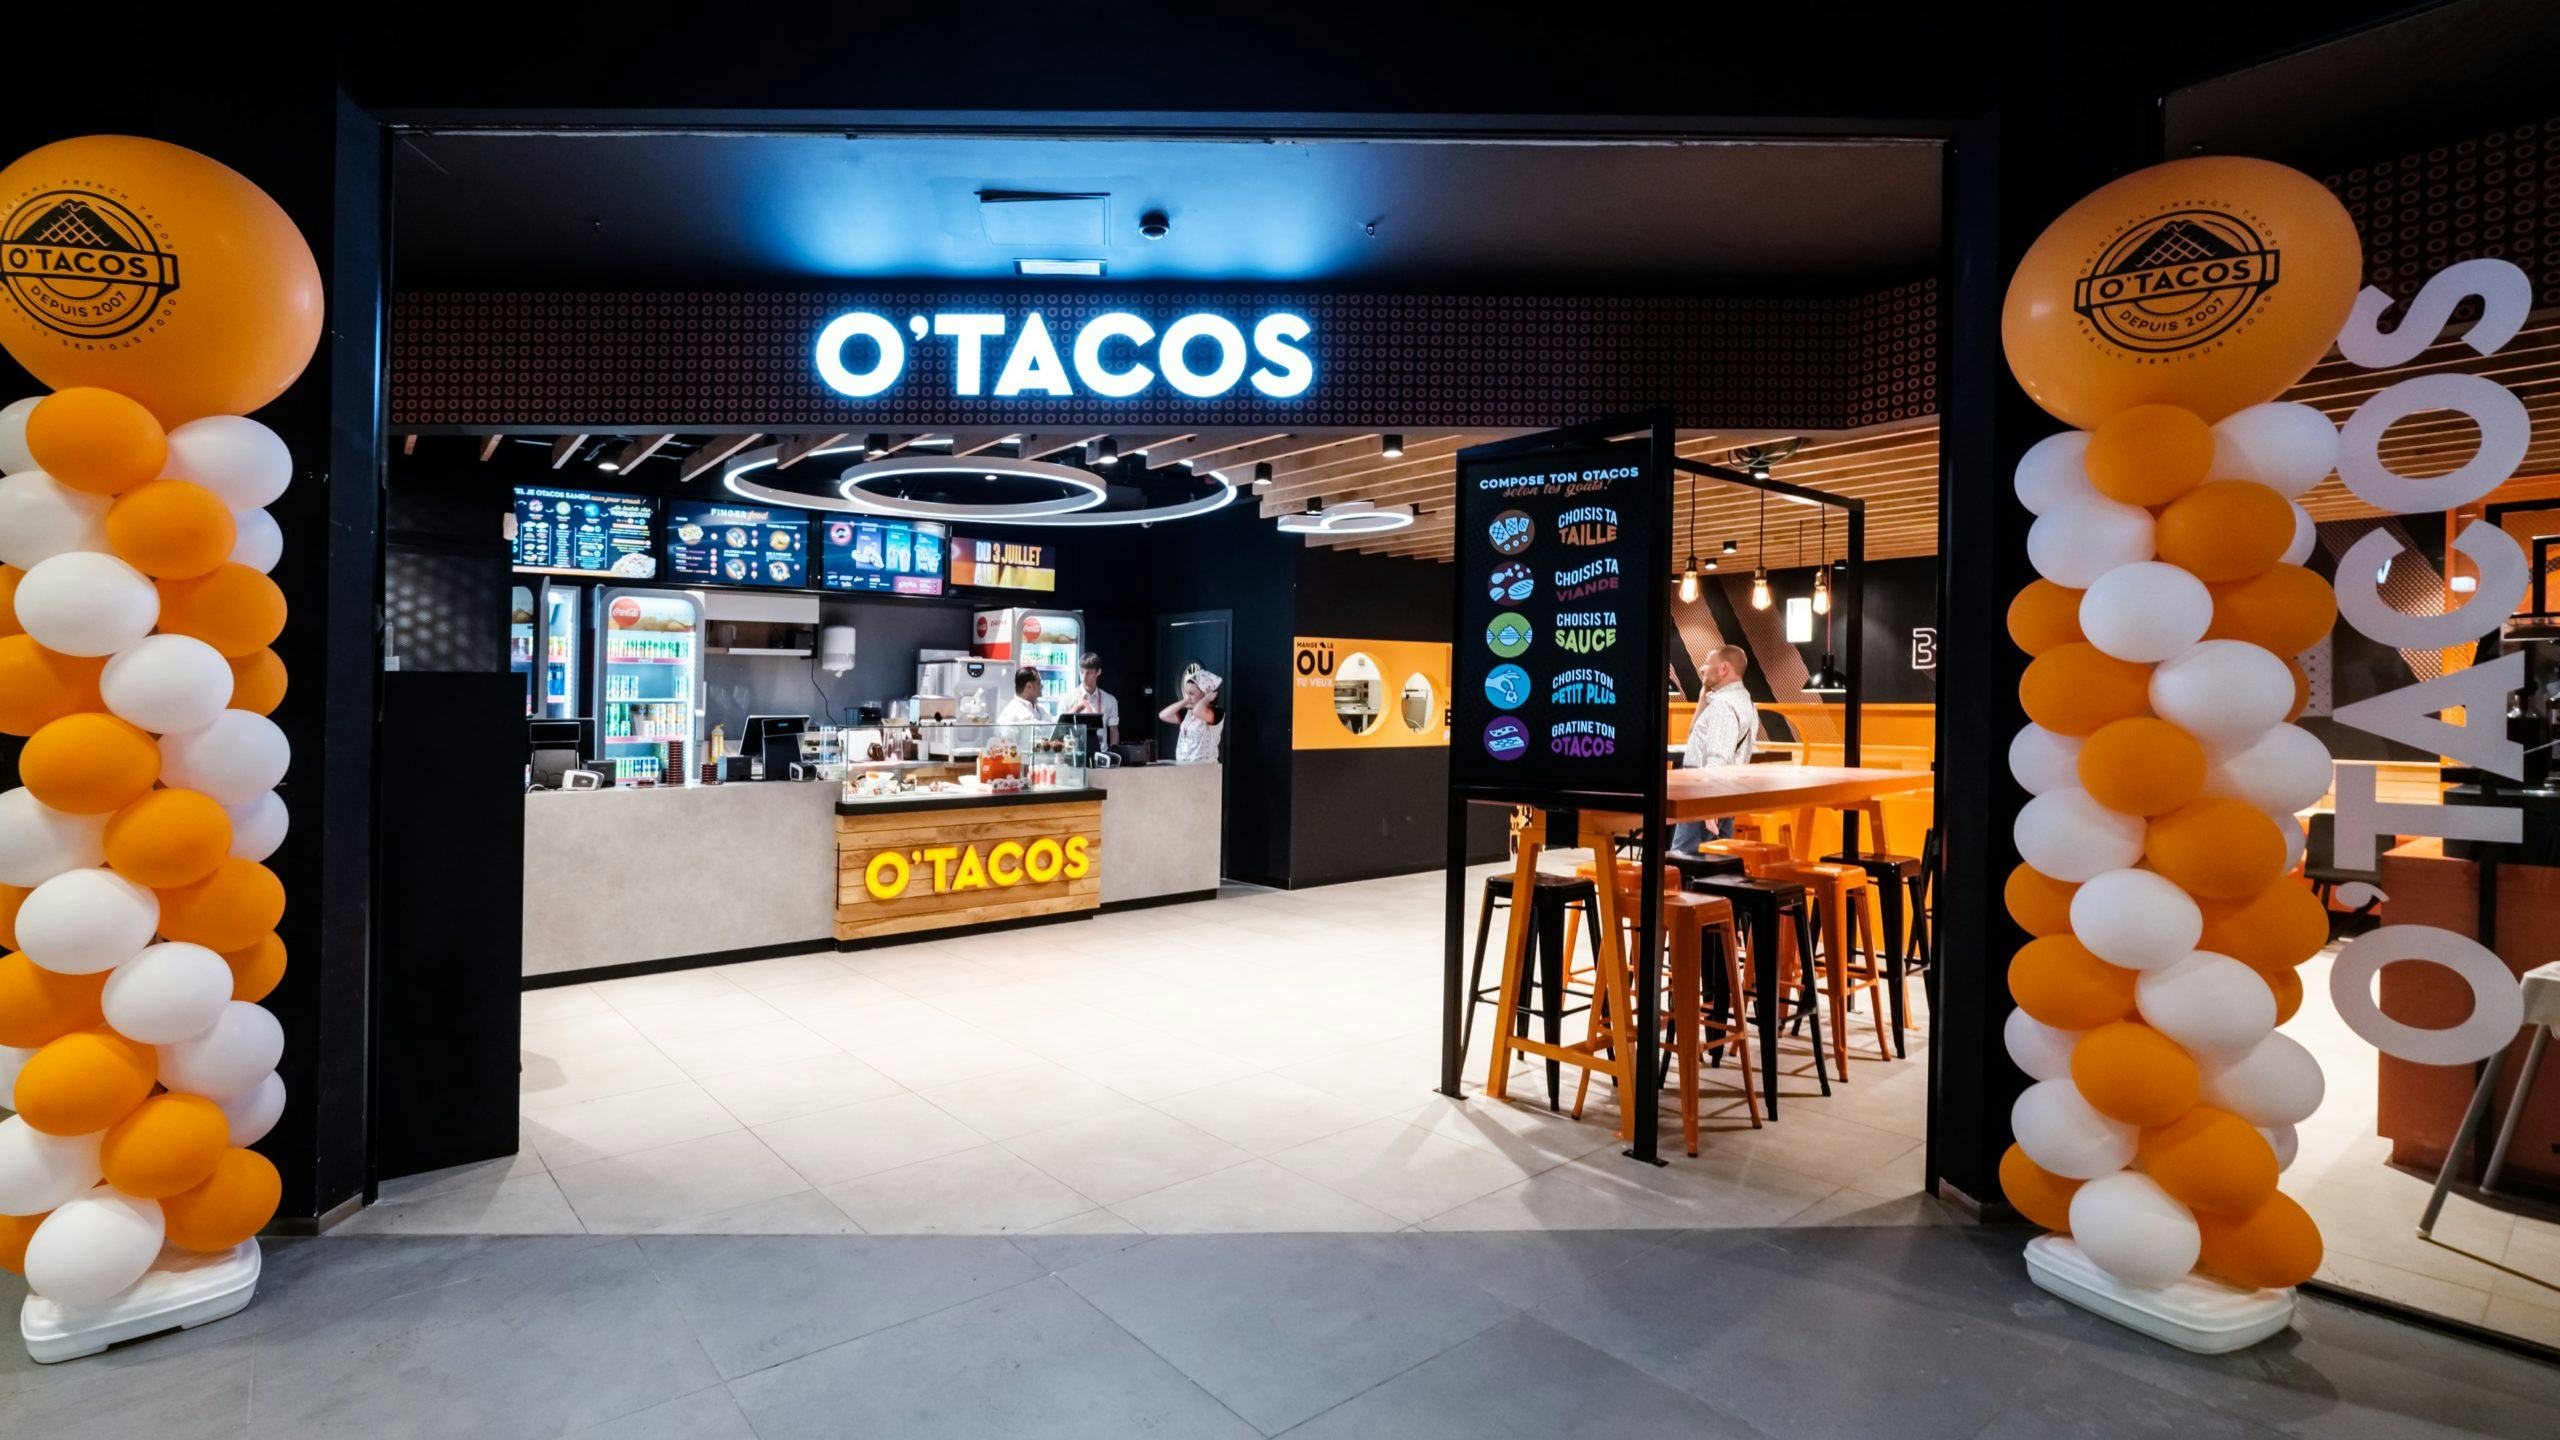 Franse tacoketen O’Tacos heeft ambitie op de Nederlandse markt